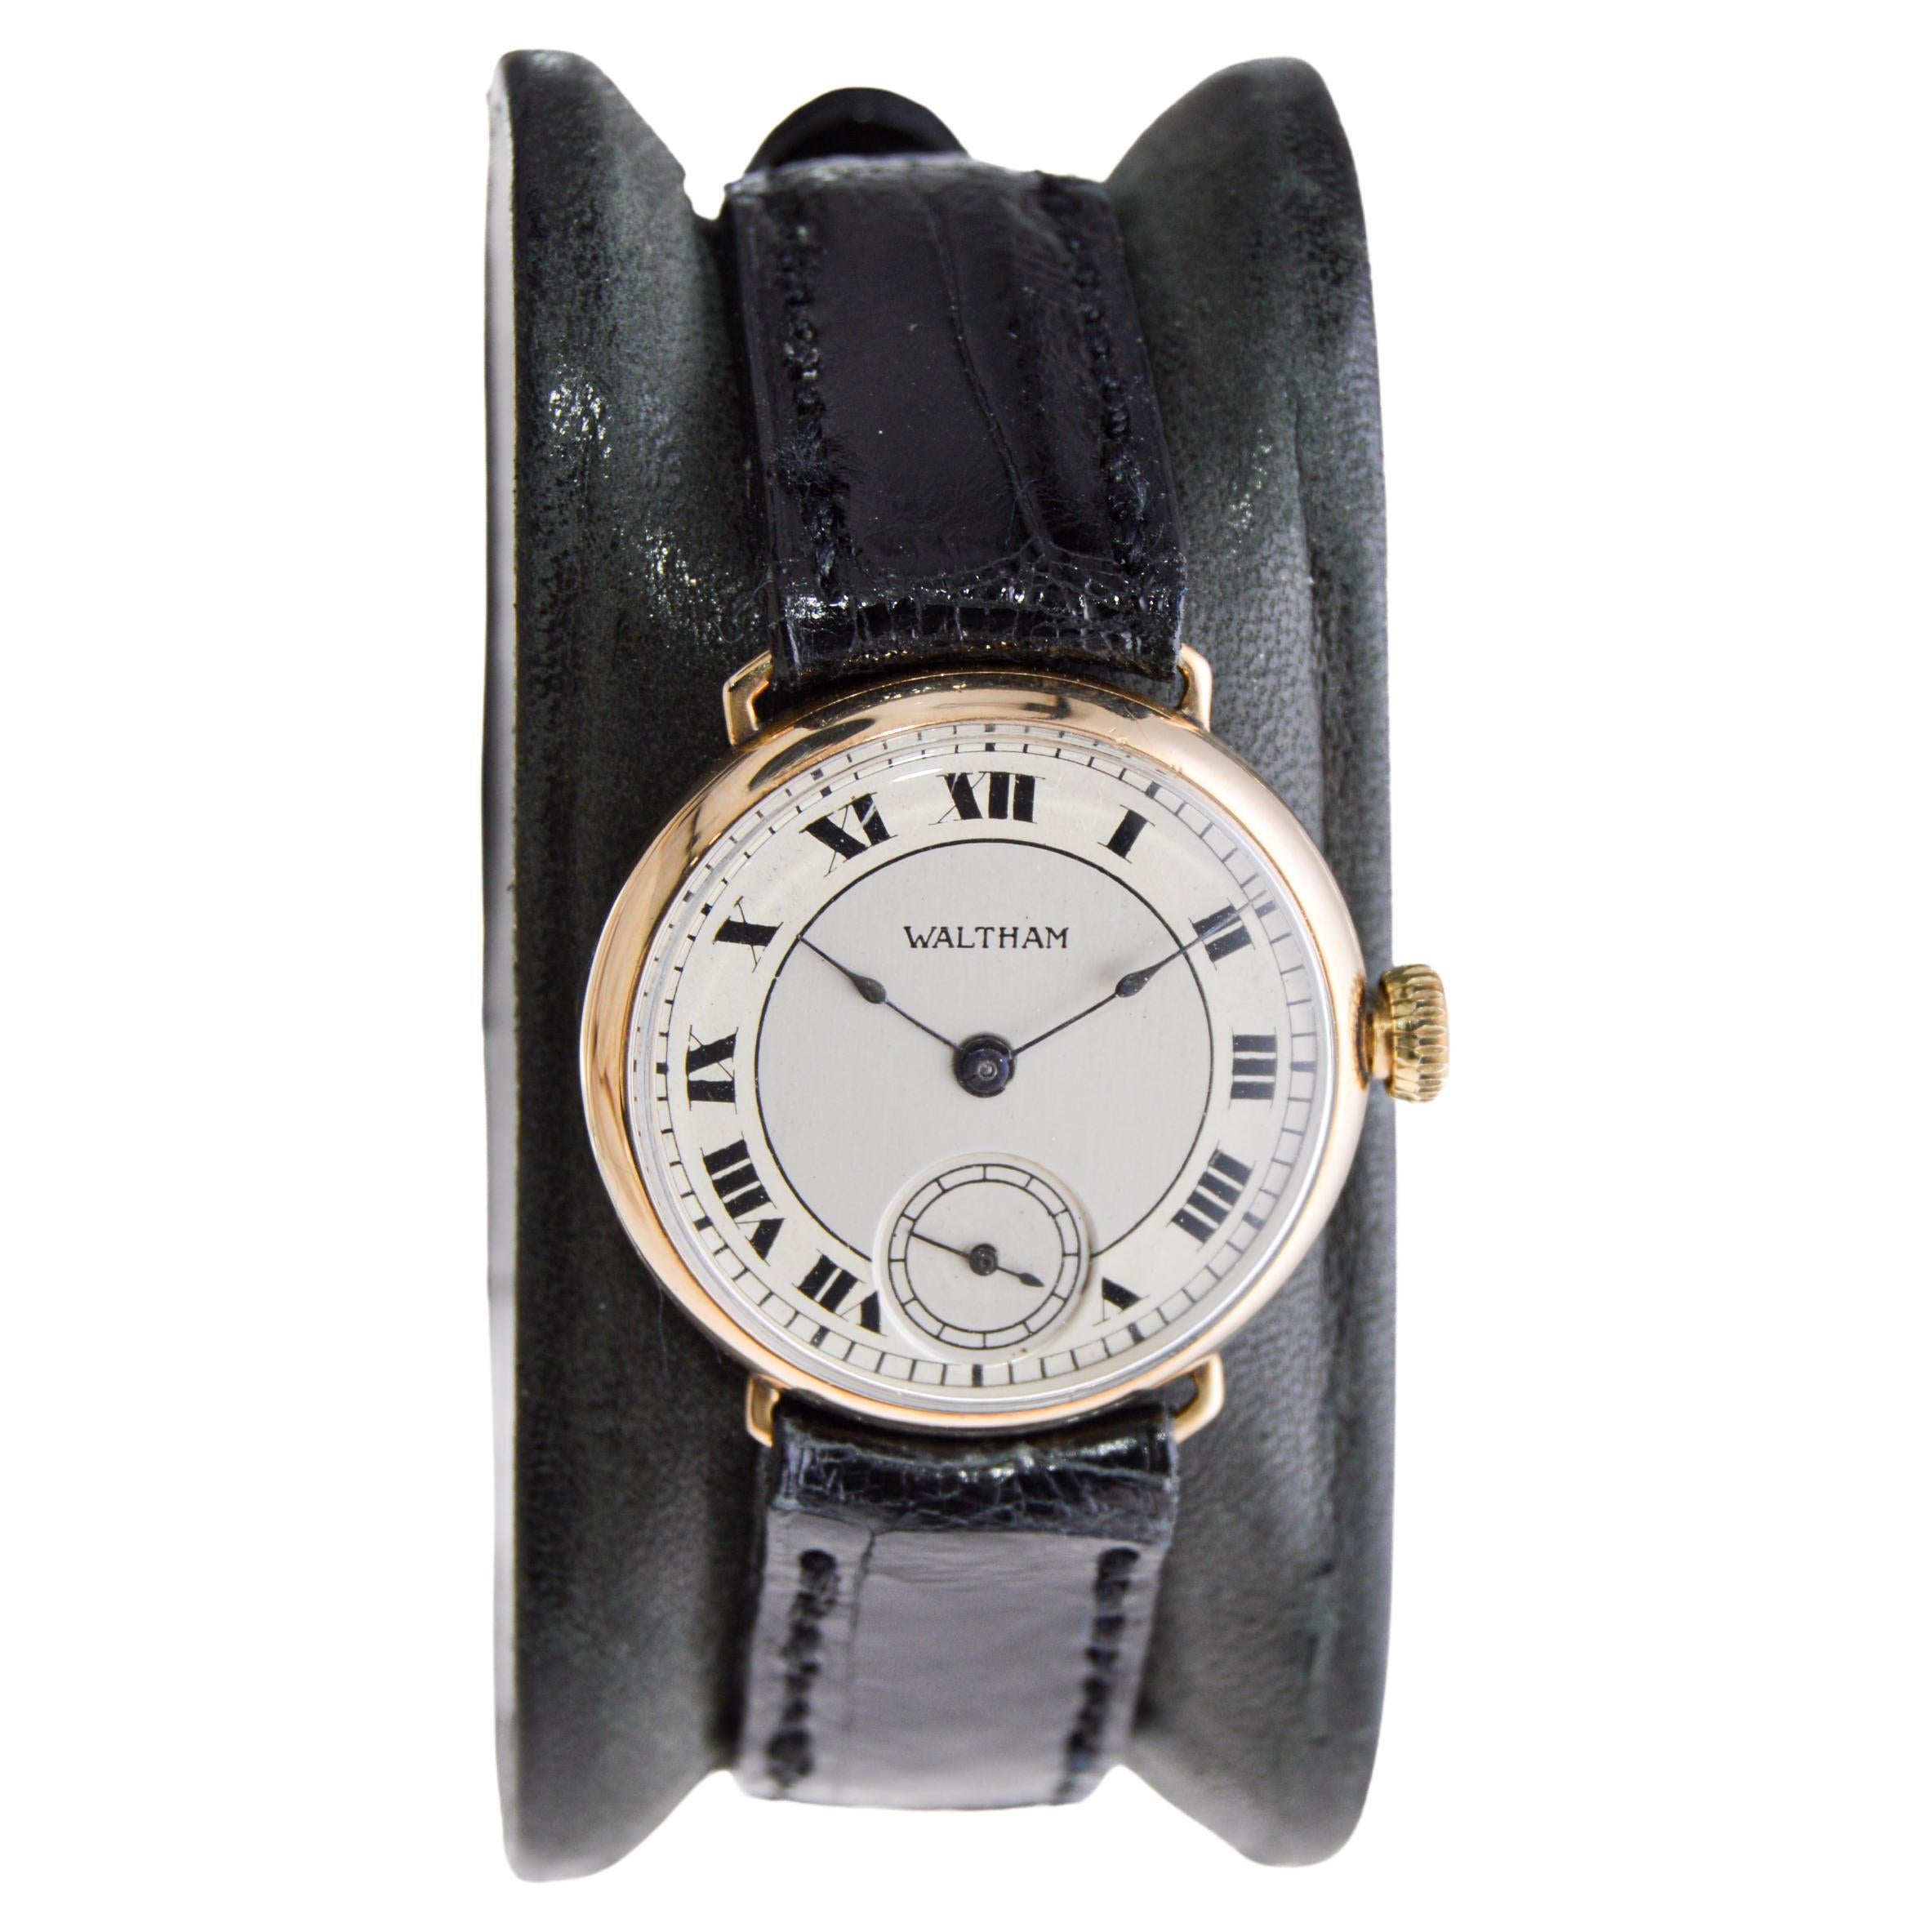 waltham wrist watch models